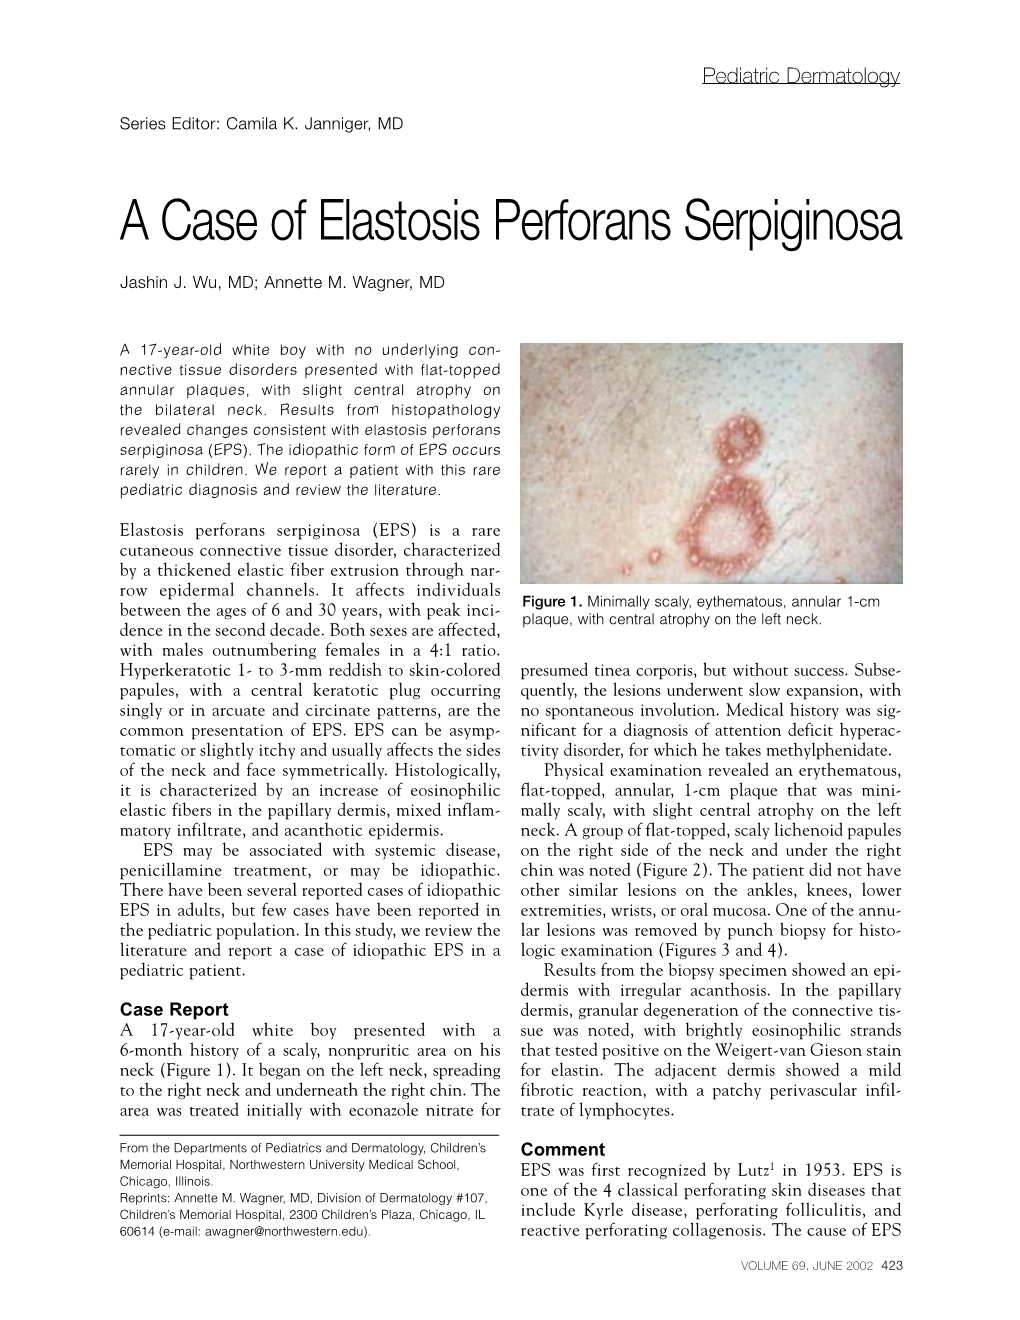 A Case of Elastosis Perforans Serpiginosa